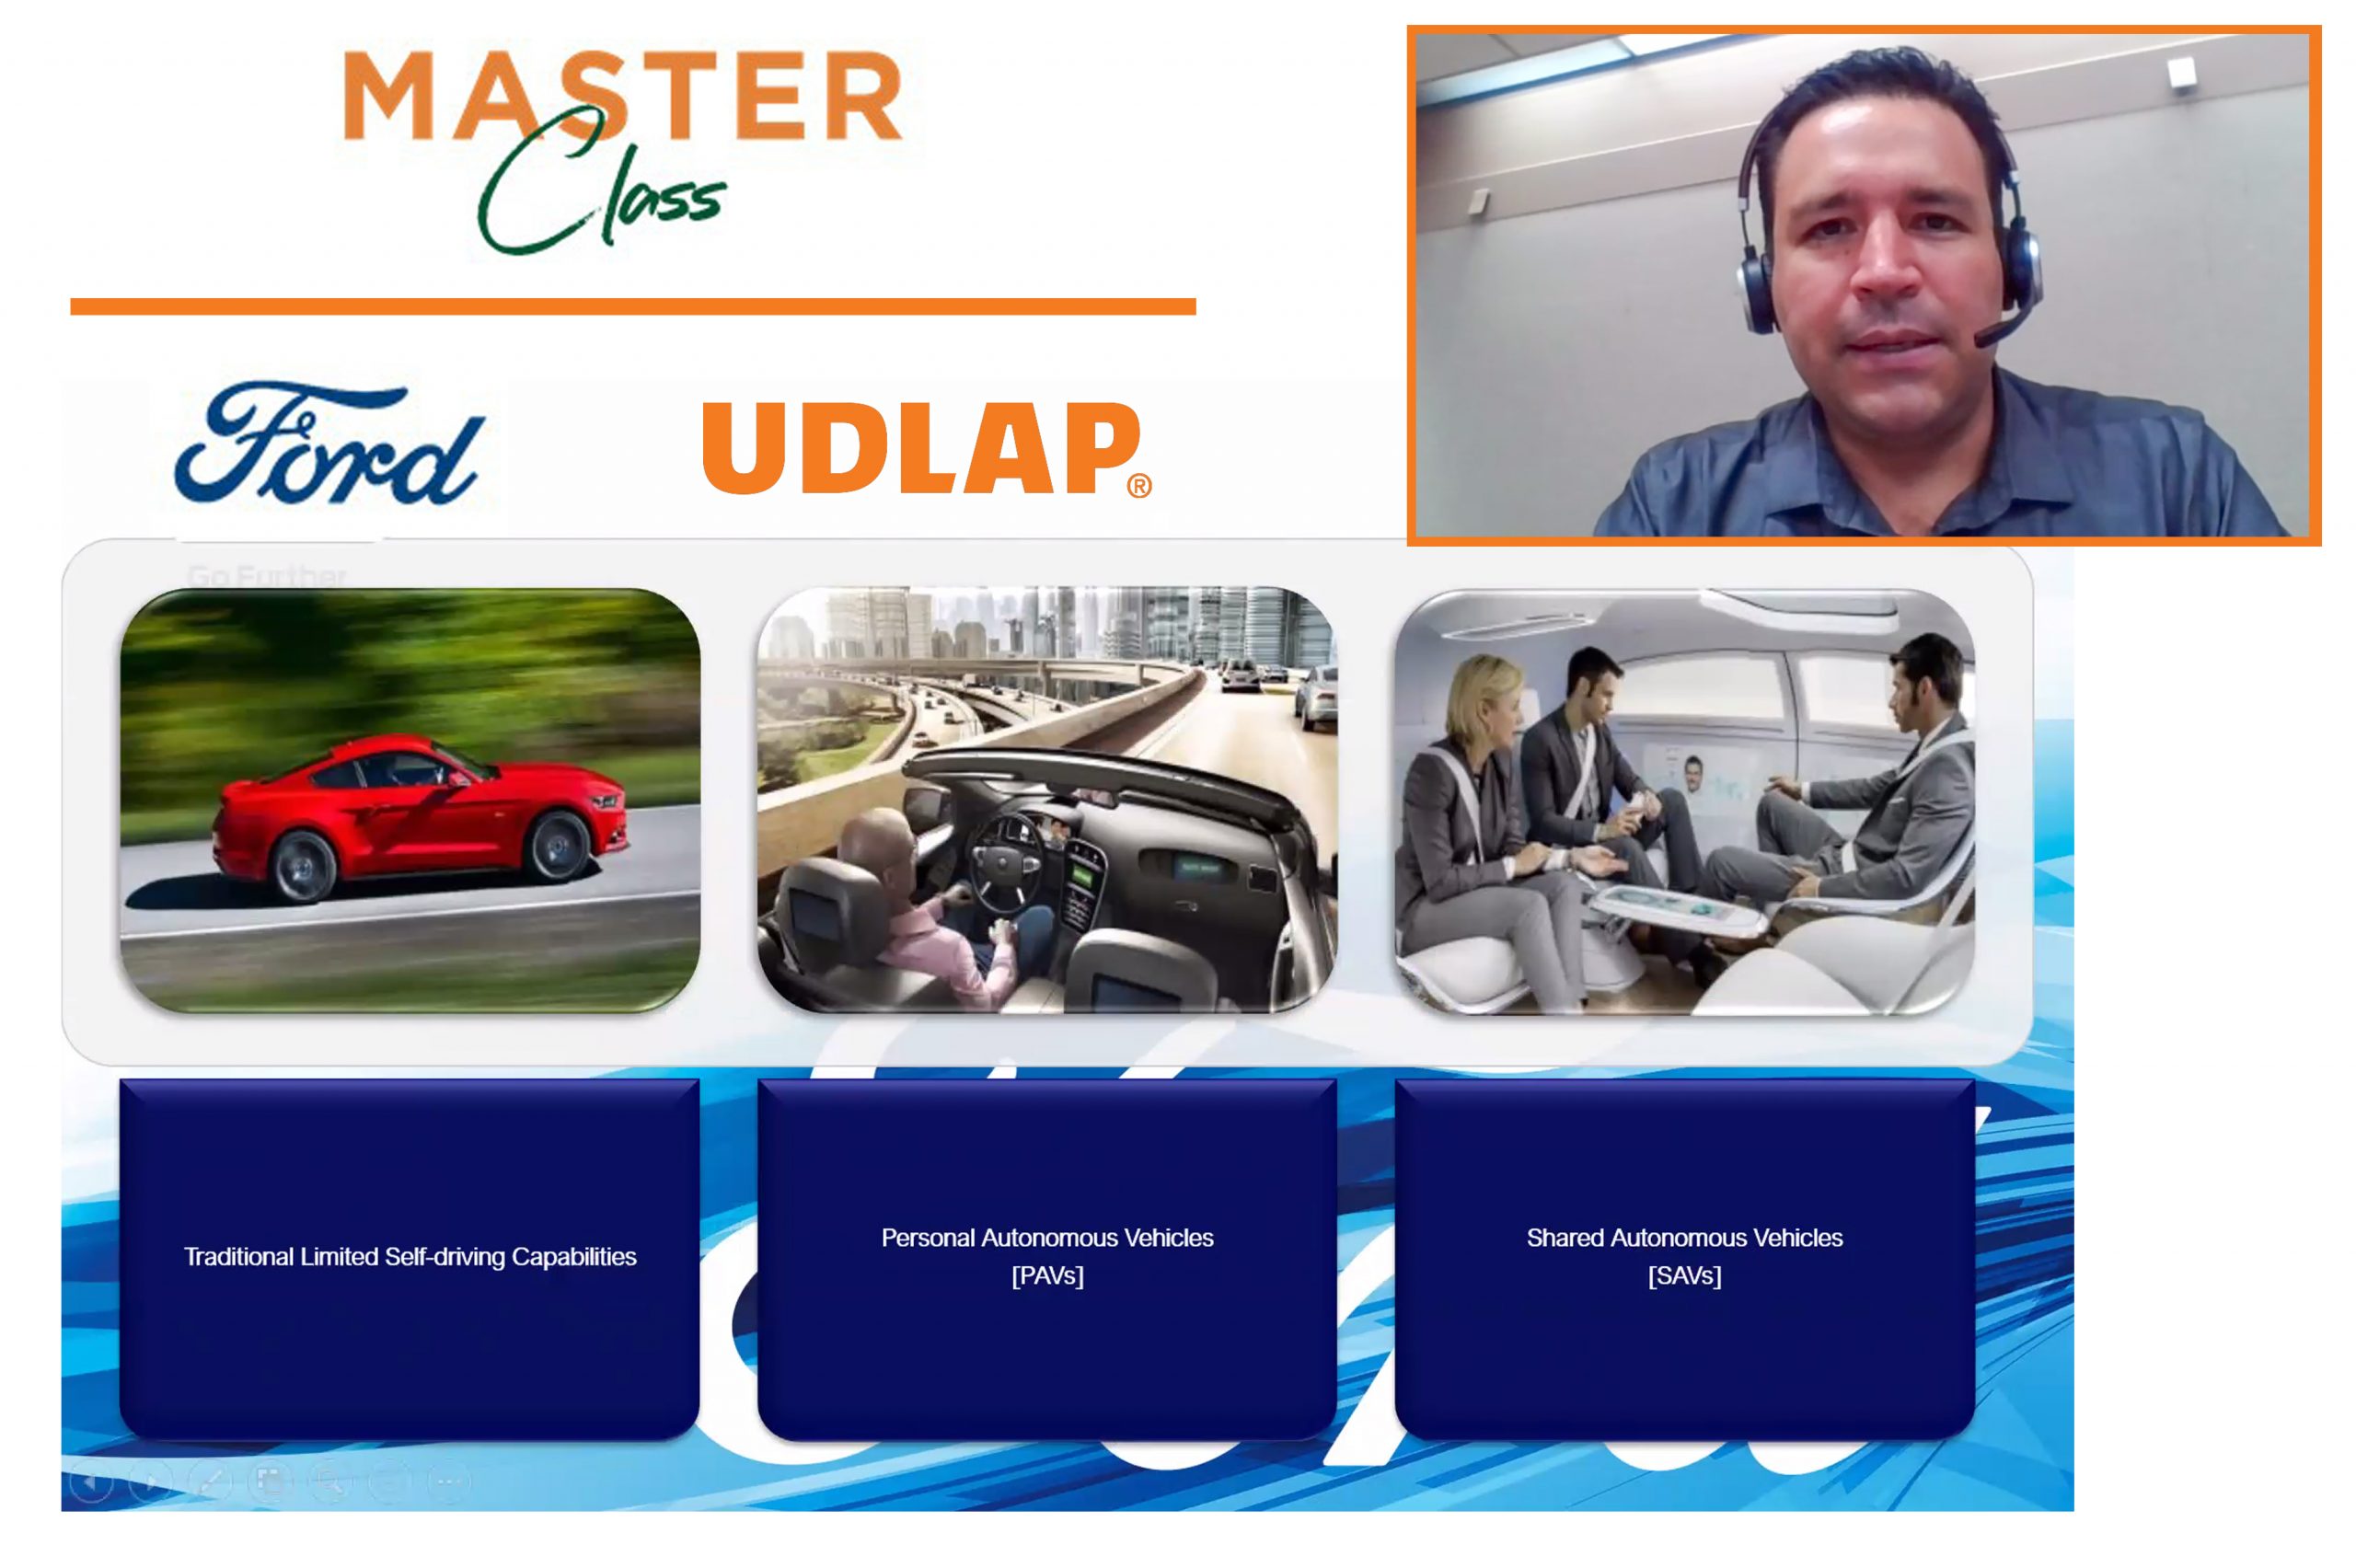 Master Class de la UDLAP predice el futuro de la autonomía automotriz